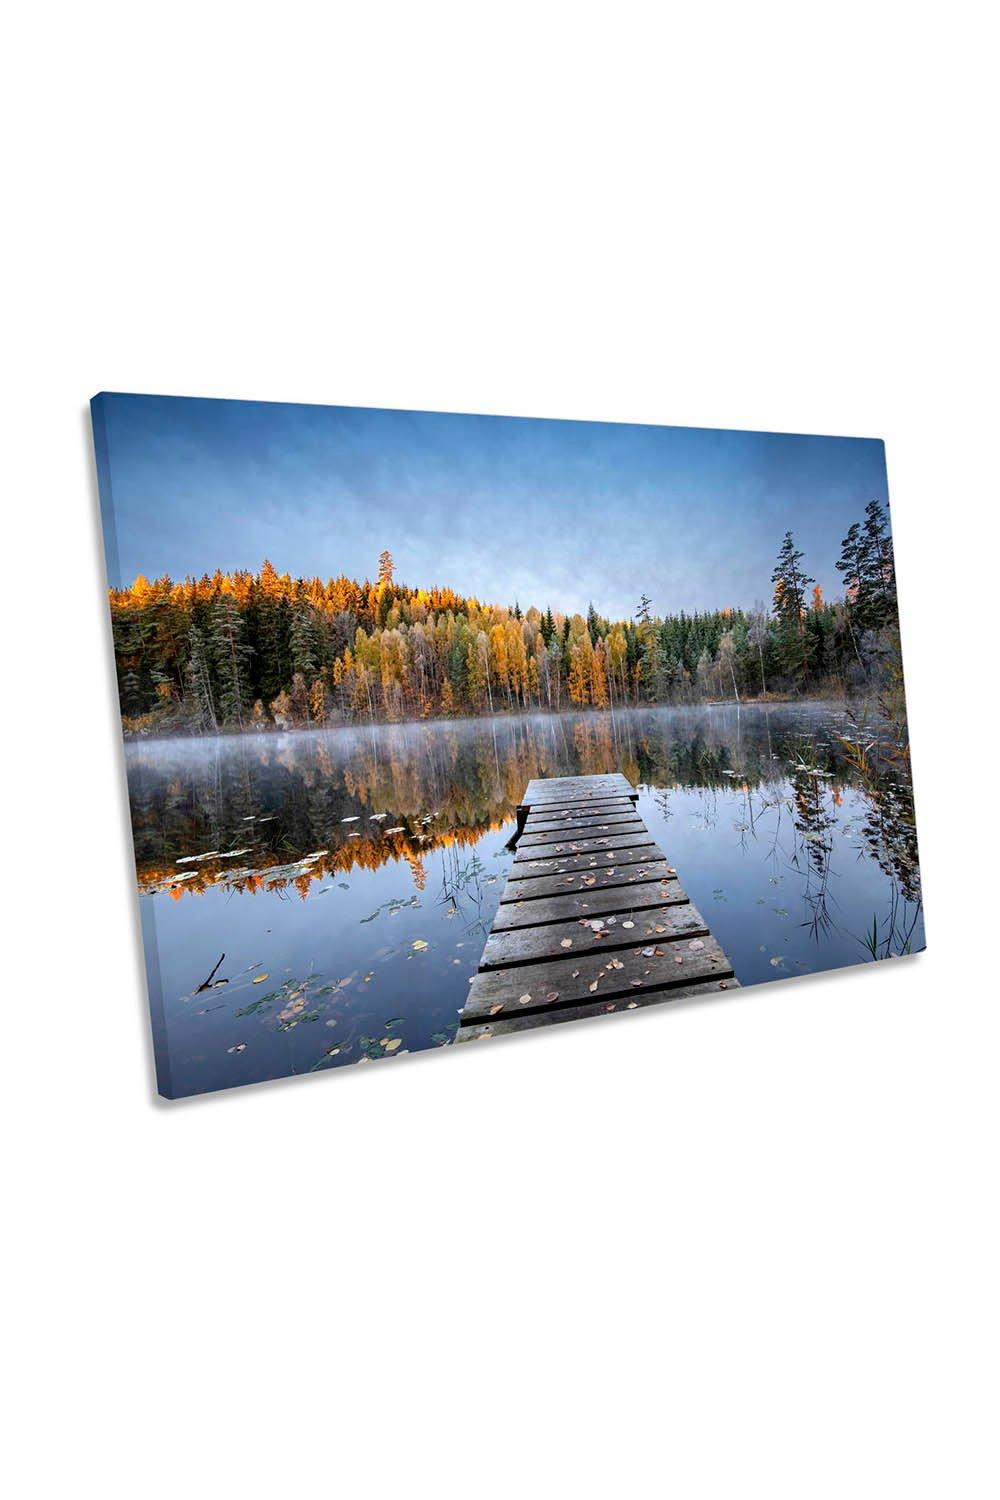 Autumn Pier Lake Frost Landscape Mist Canvas Wall Art Picture Print